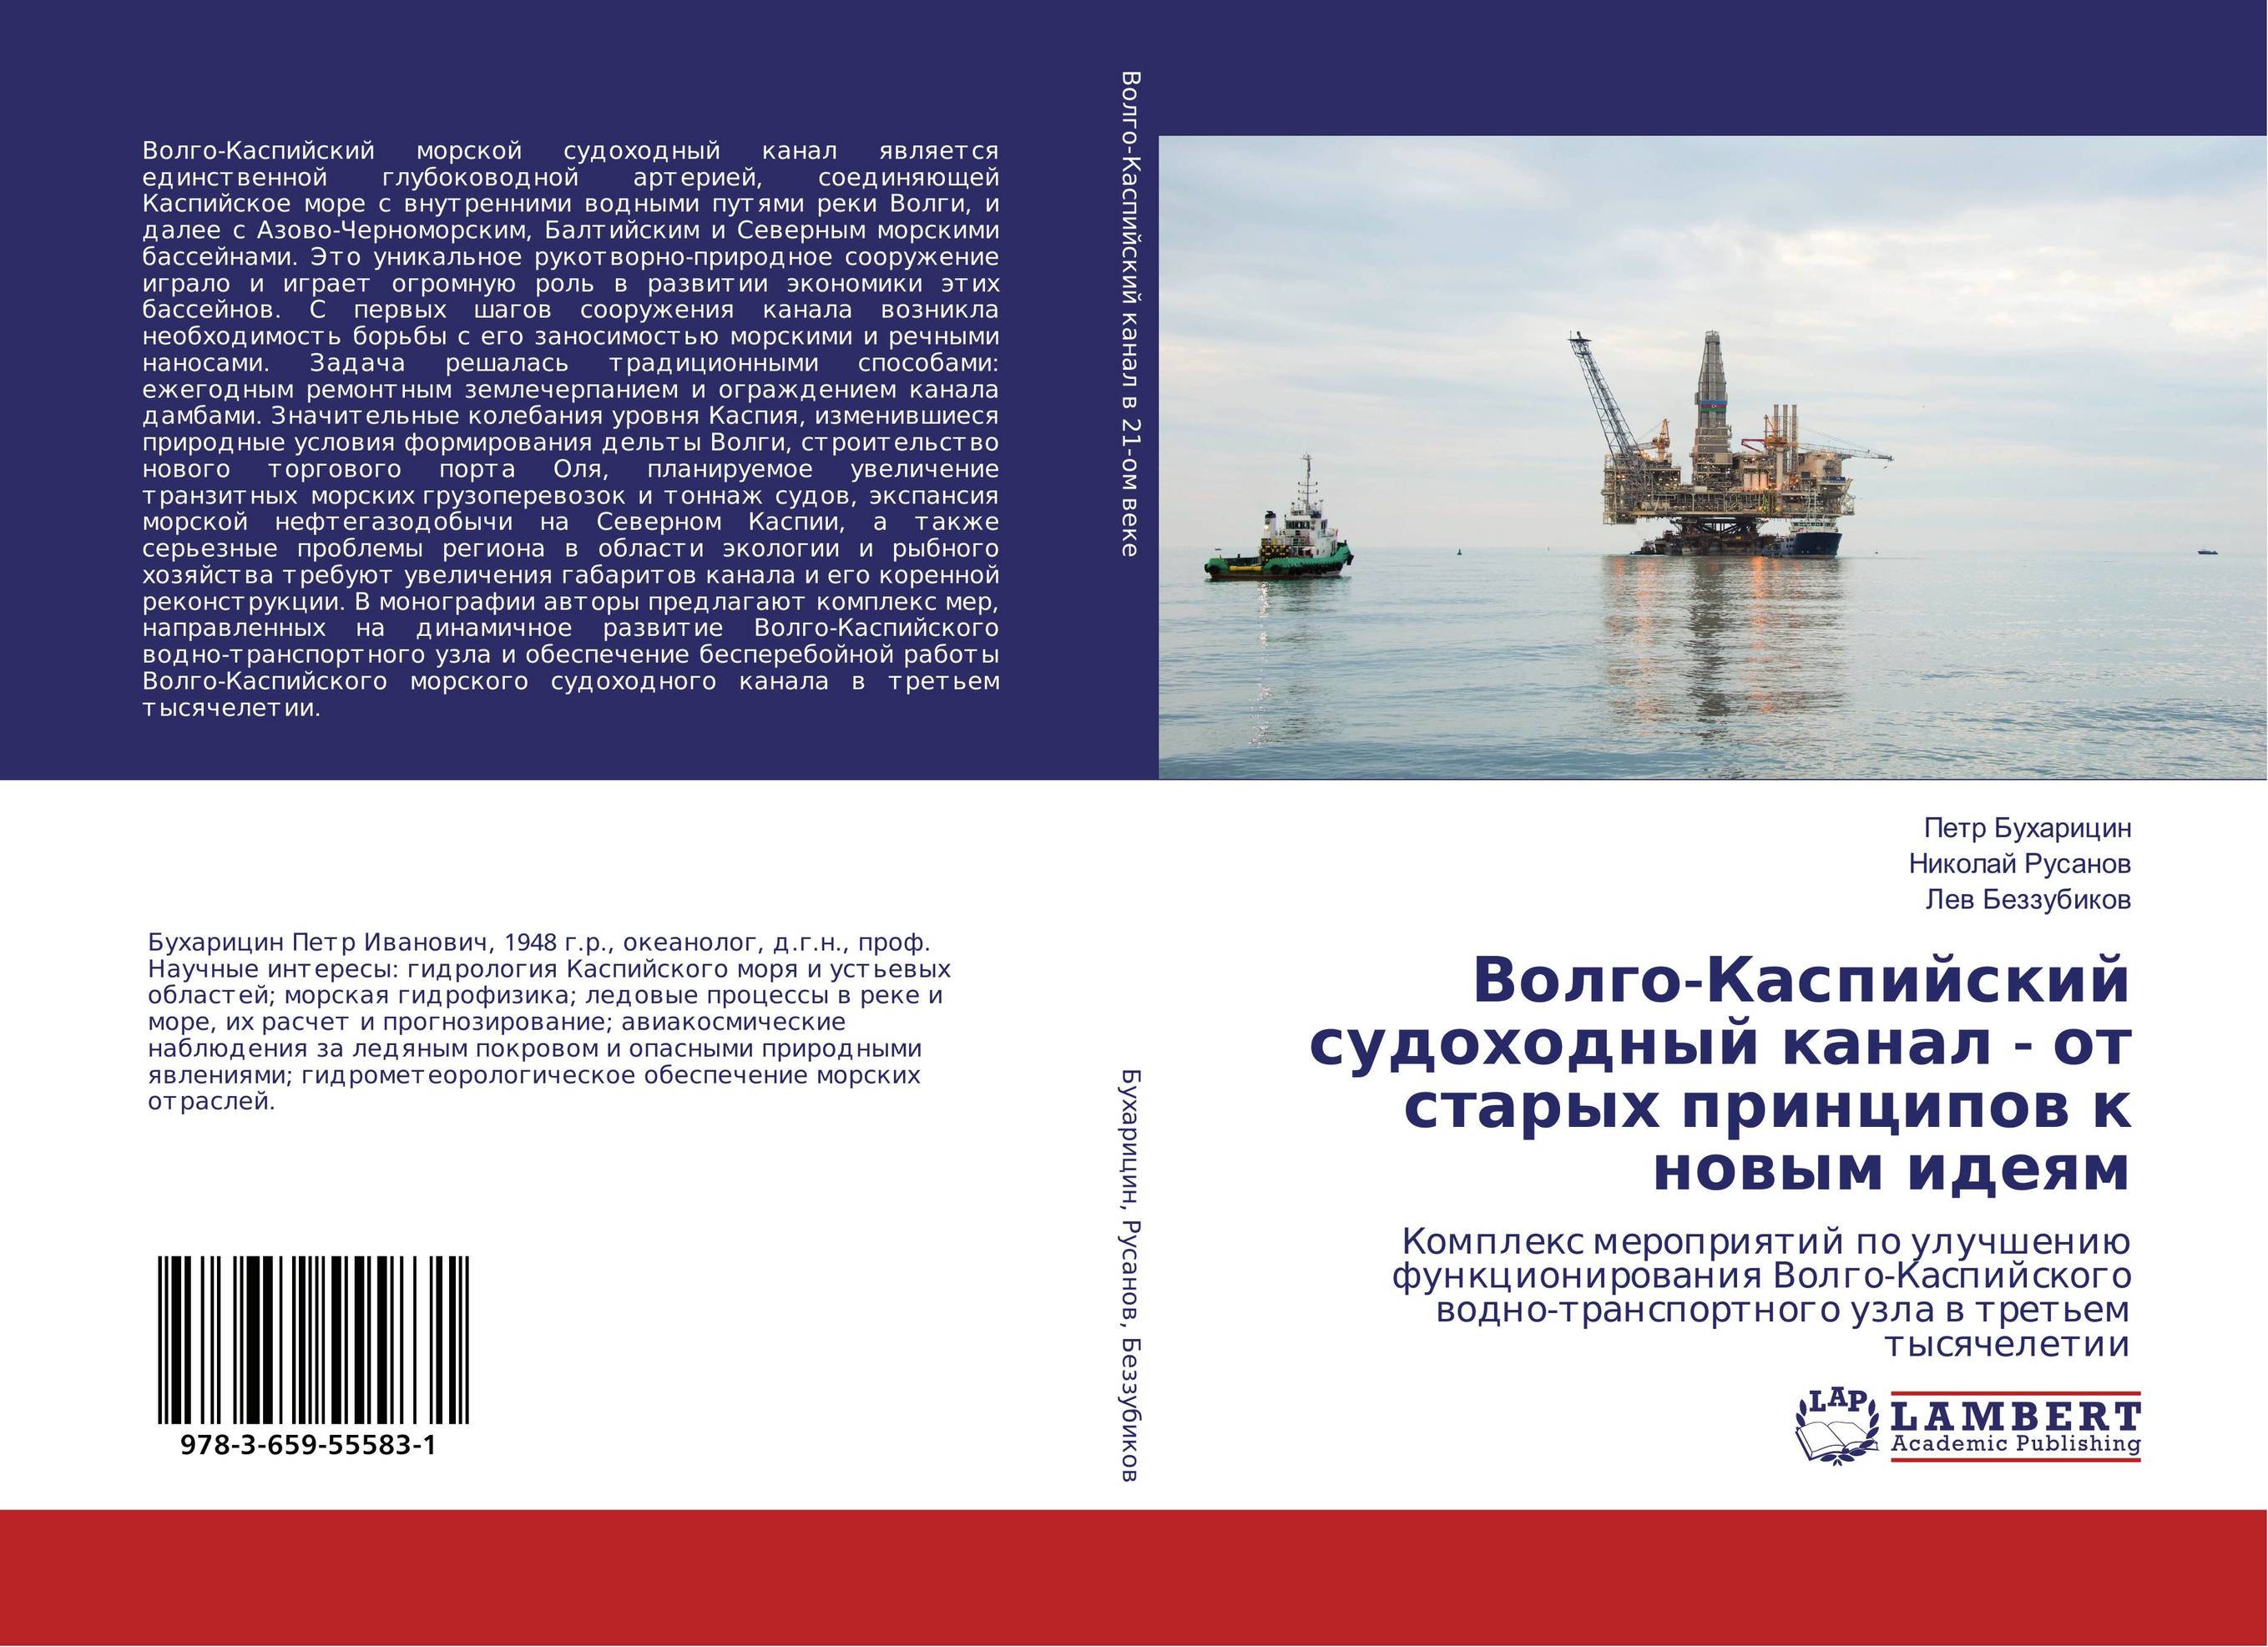 
        Волго-Каспийский судоходный канал - от старых принципов к новым идеям. Комплекс мероприятий по улучшению функционирования Волго-Каспийского водно-транспортного узла в третьем тысячелетии.
      